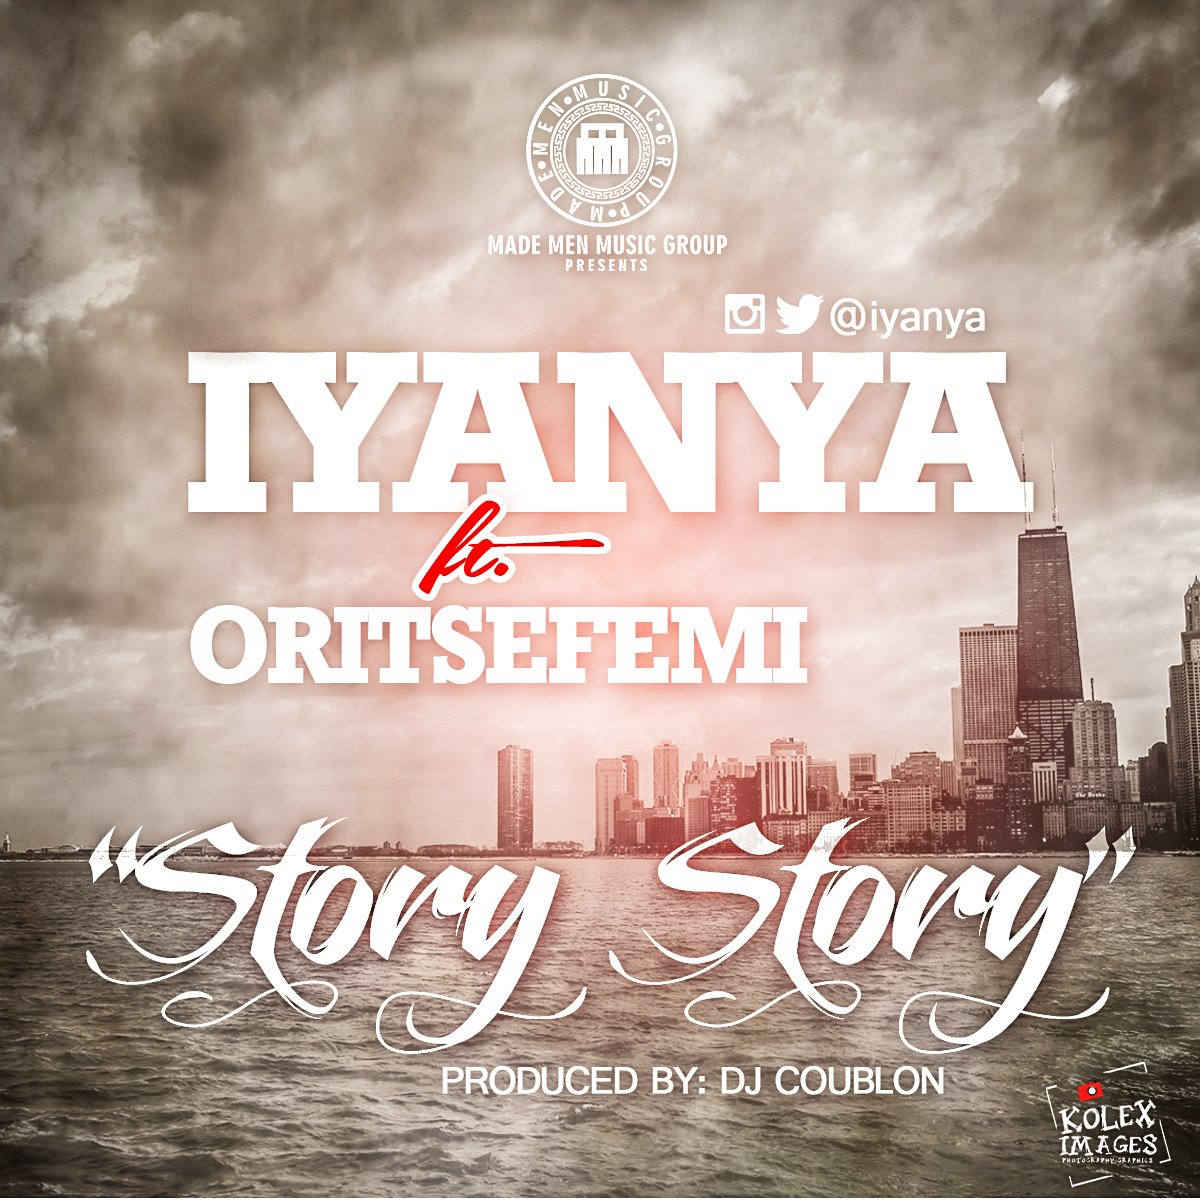 Iyanya - Story Story ft Oritse Femi